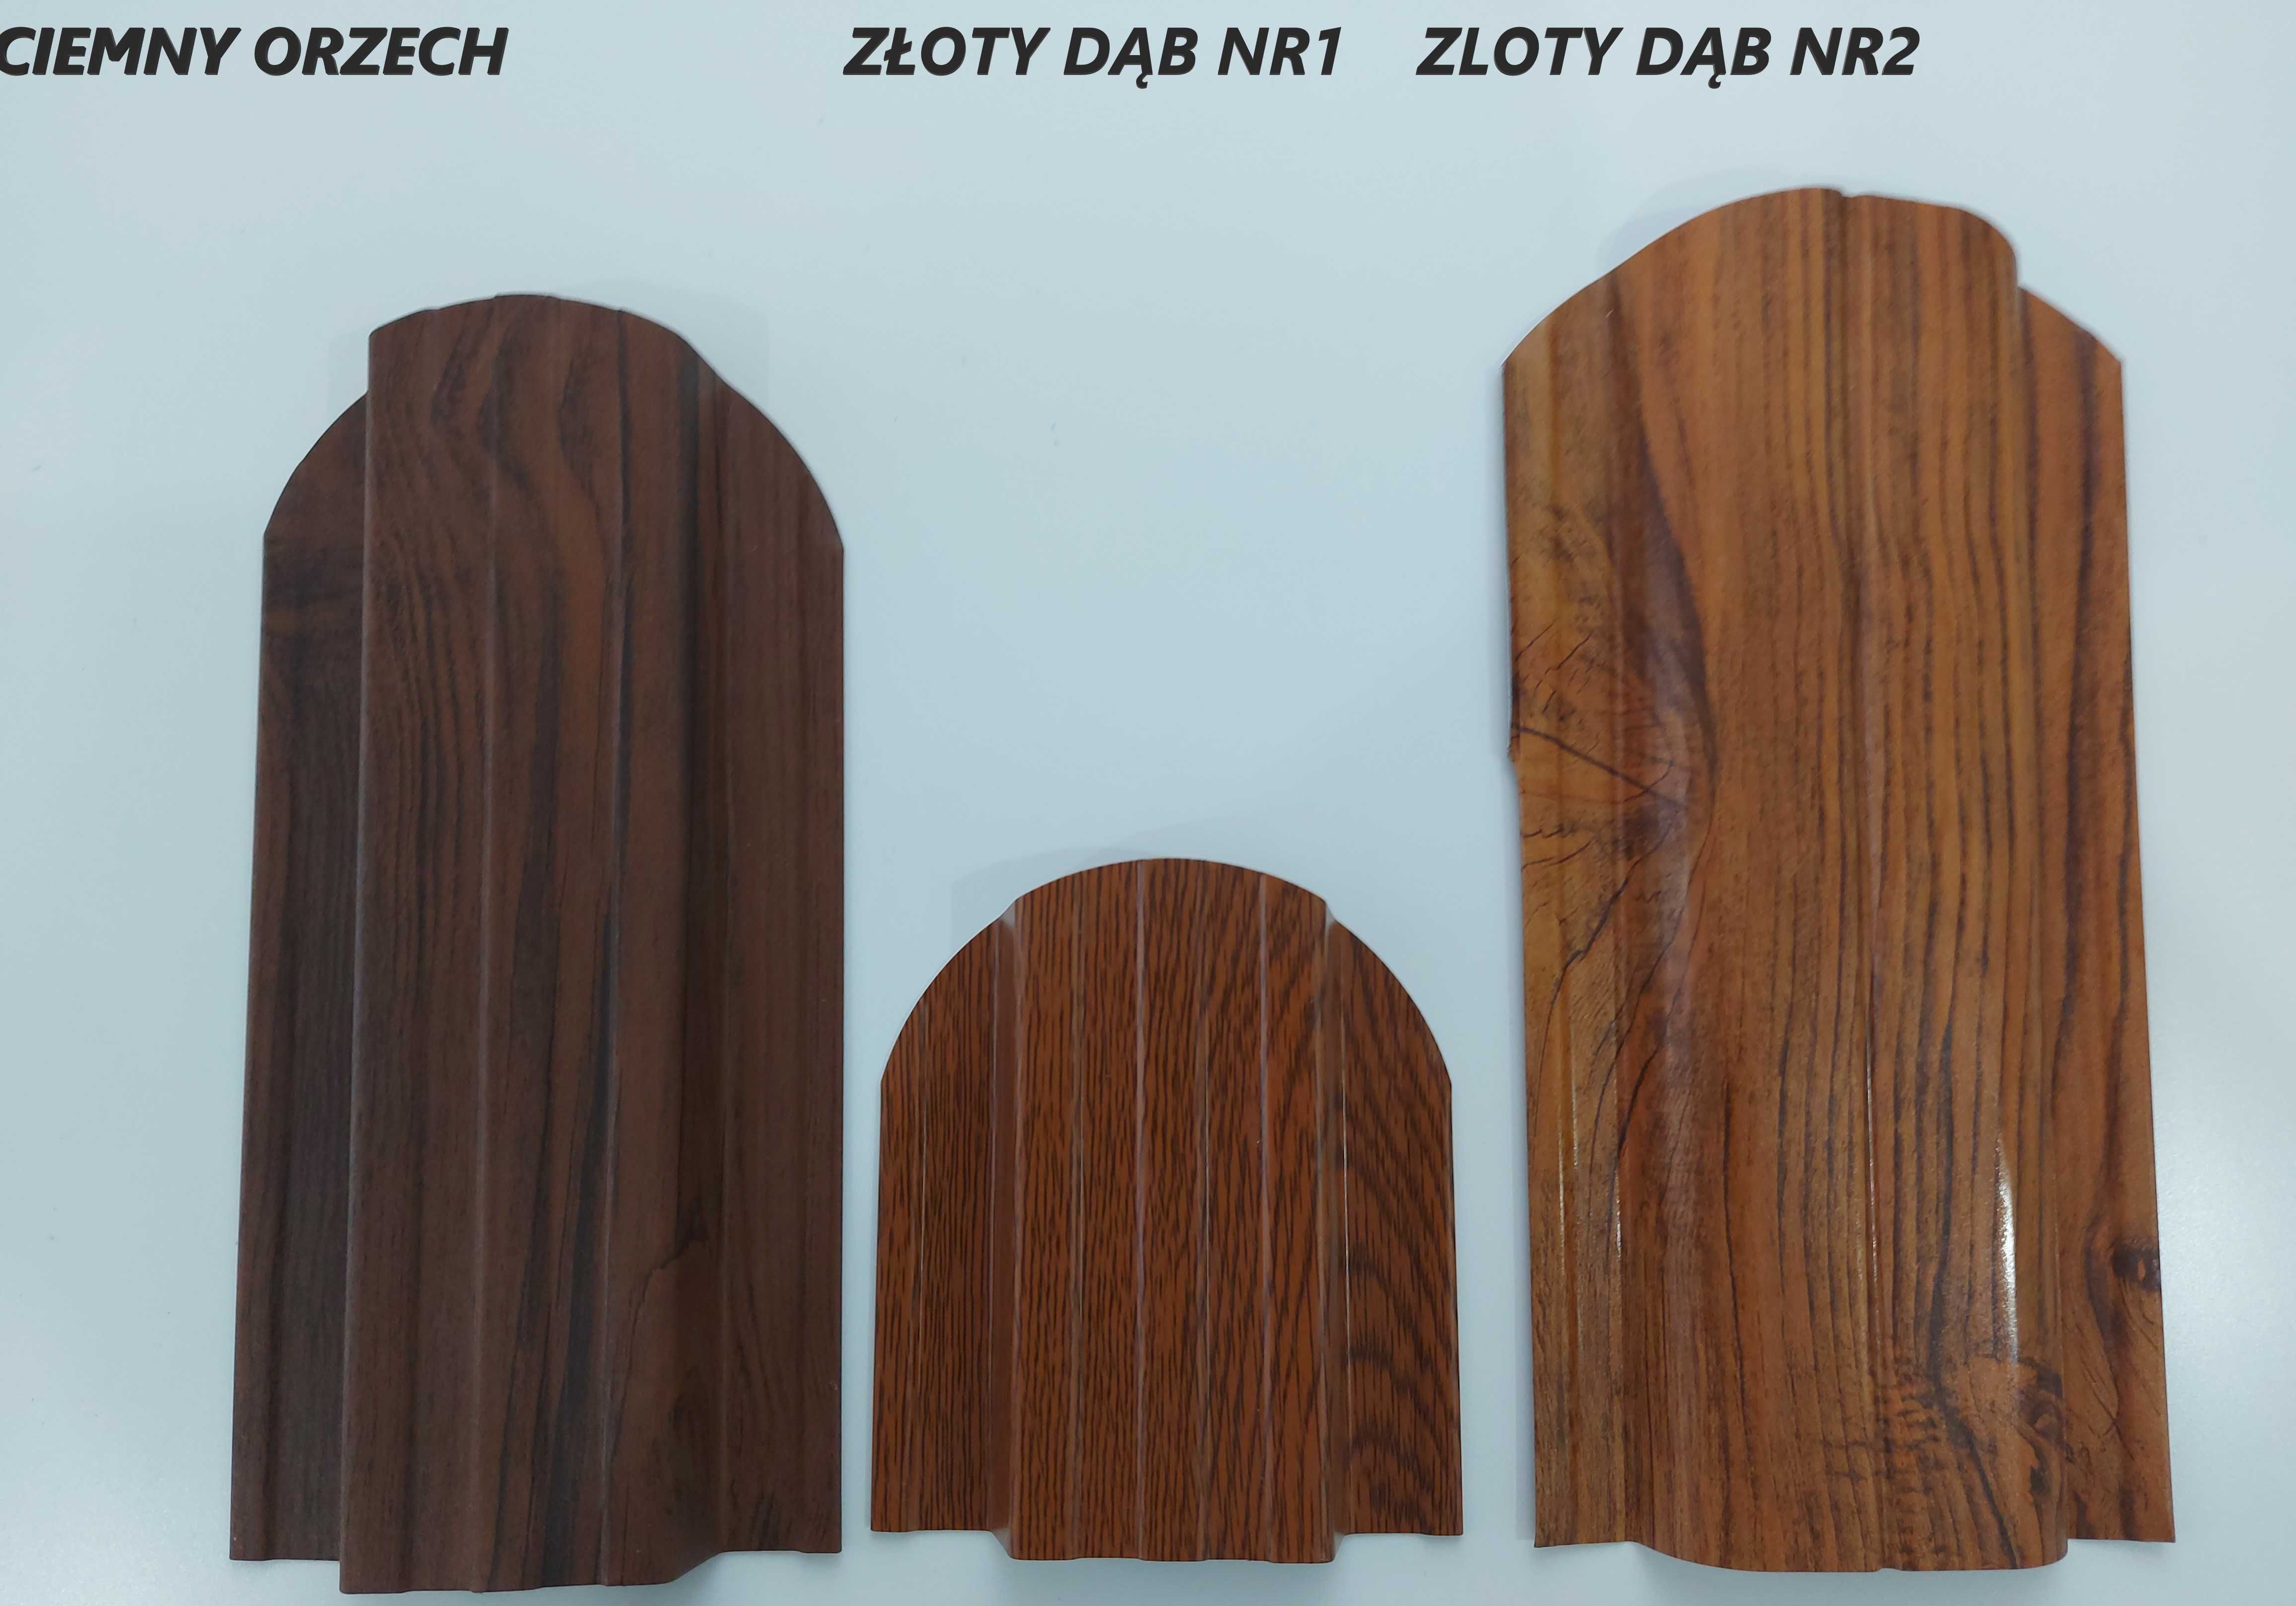 Sztachety Sztachetki Panele Metalowe 11.5cm-12.4cm Producent Transport